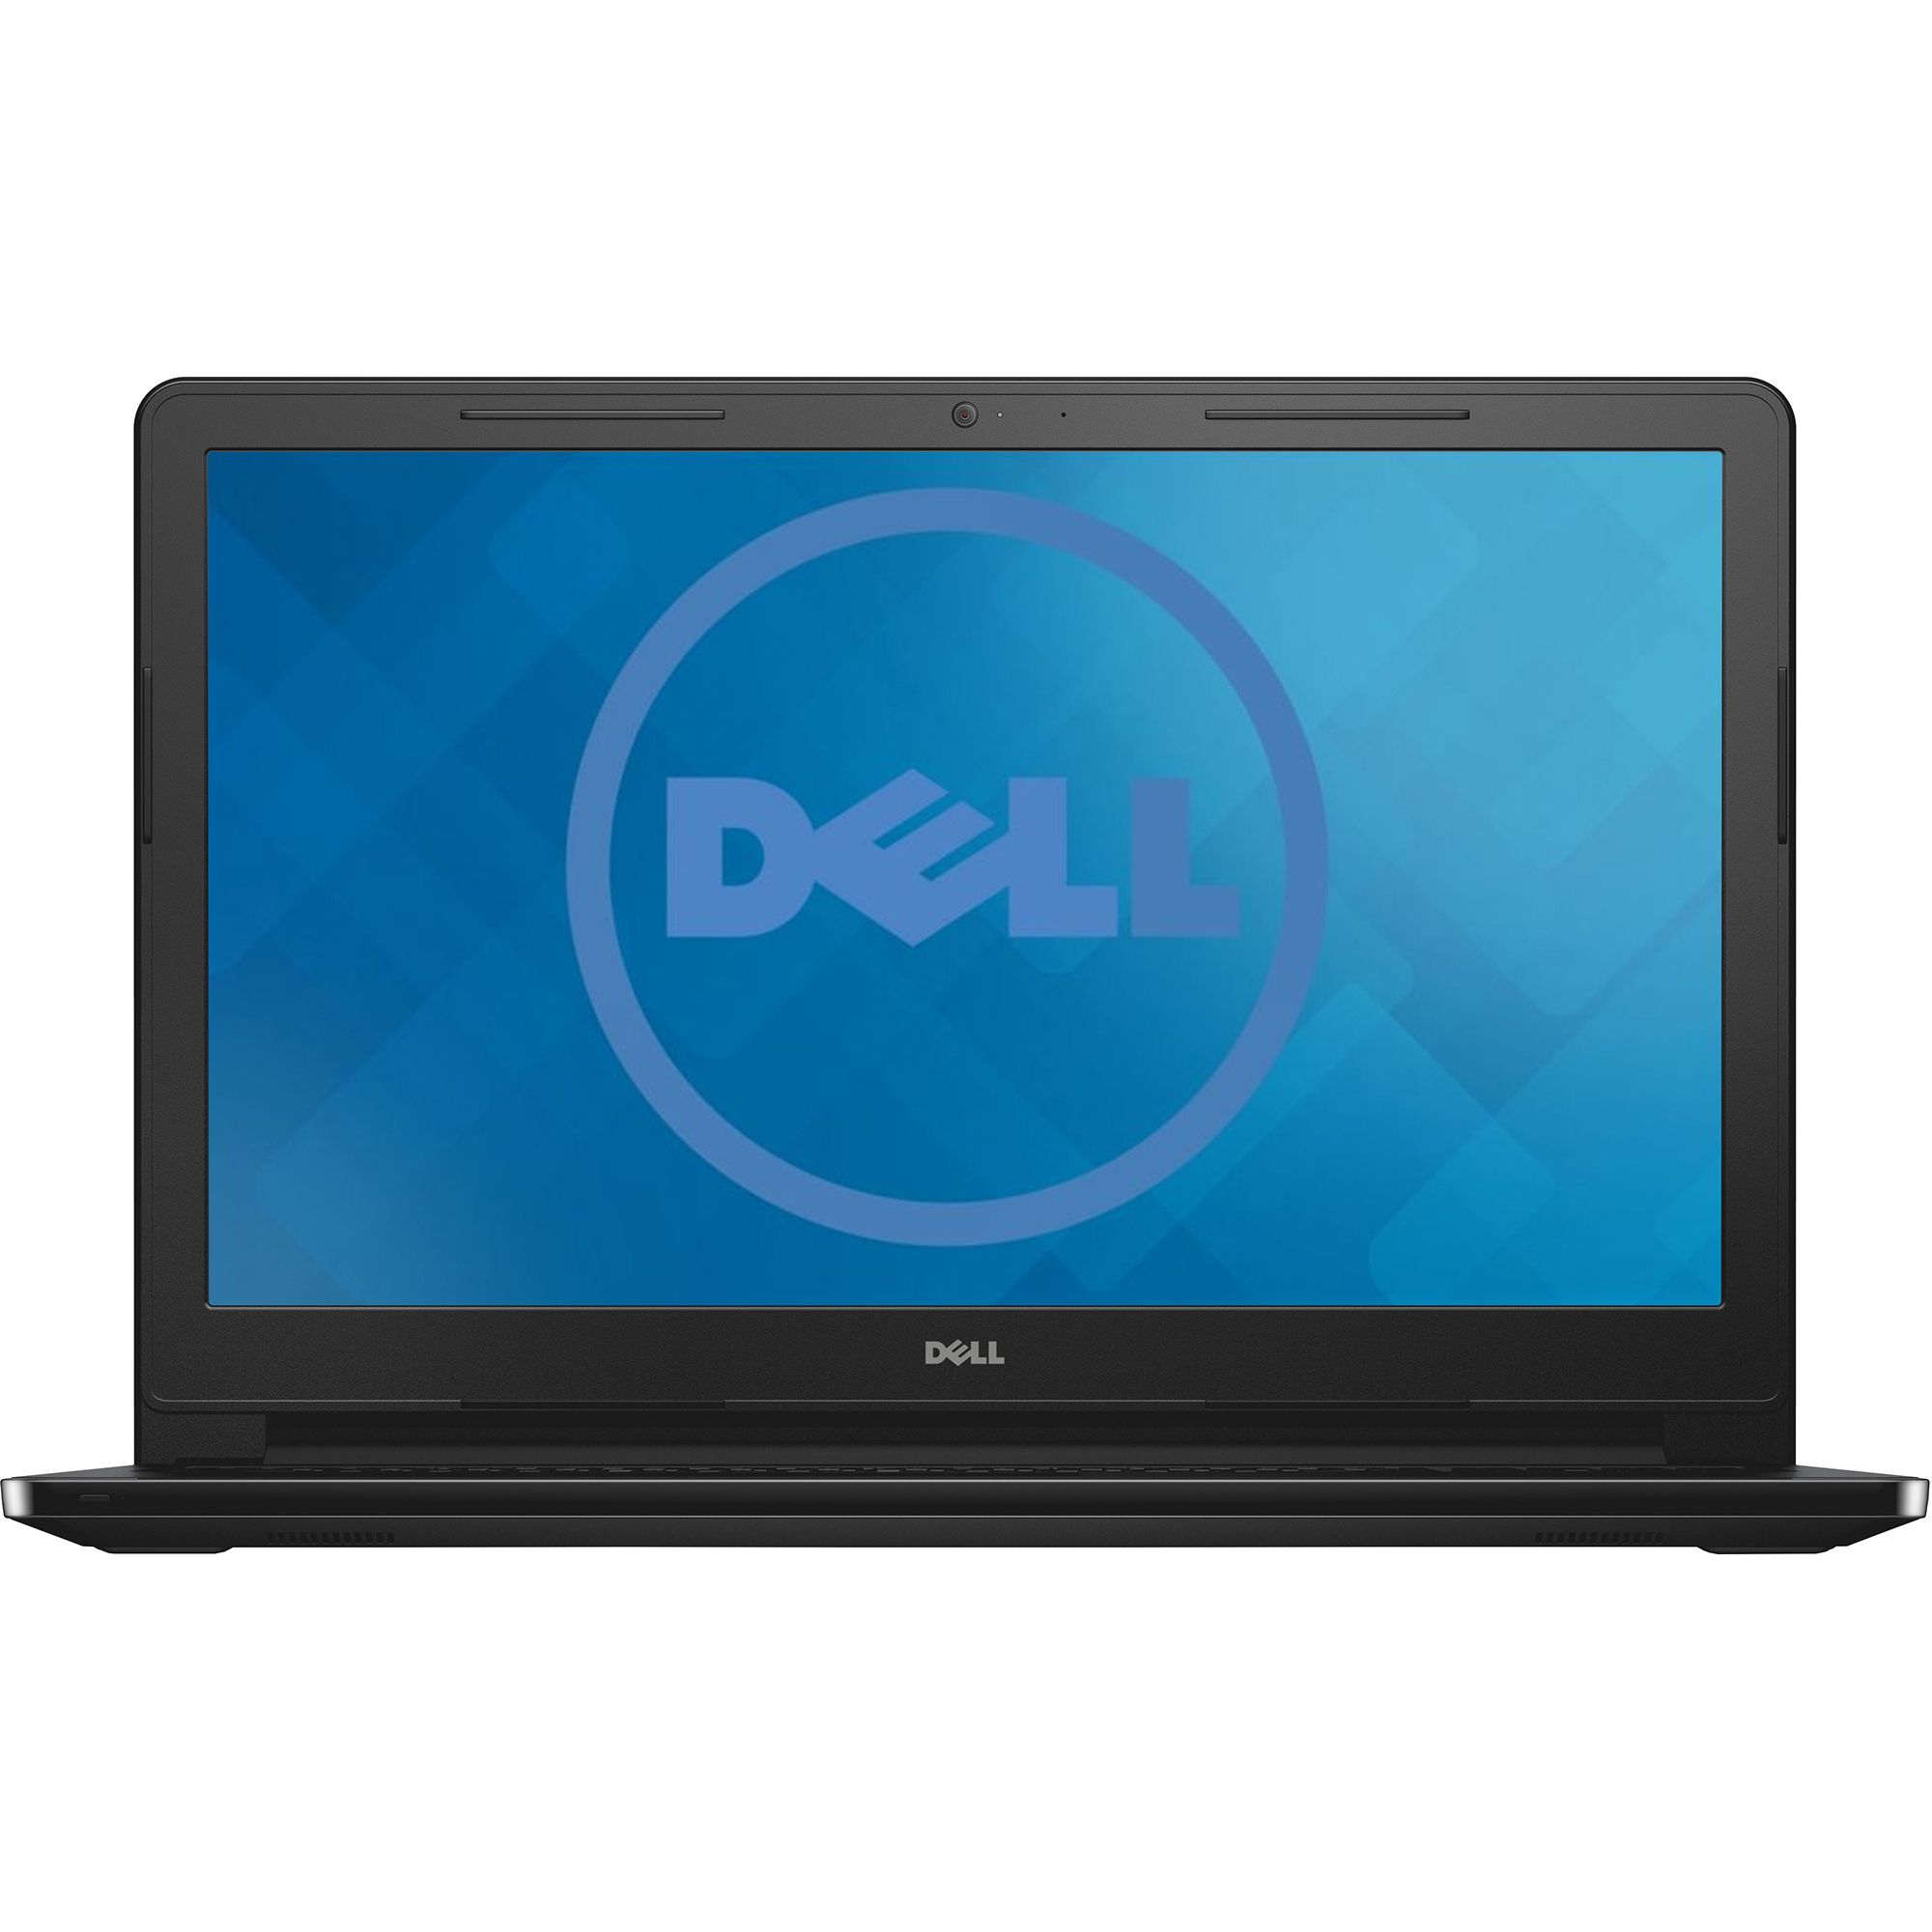 Laptop Dell Inspiron 3567, Intel Core i5-7200U, 4GB DDR4, HDD 500GB, AMD Radeon R5 M430 2GB, Linux